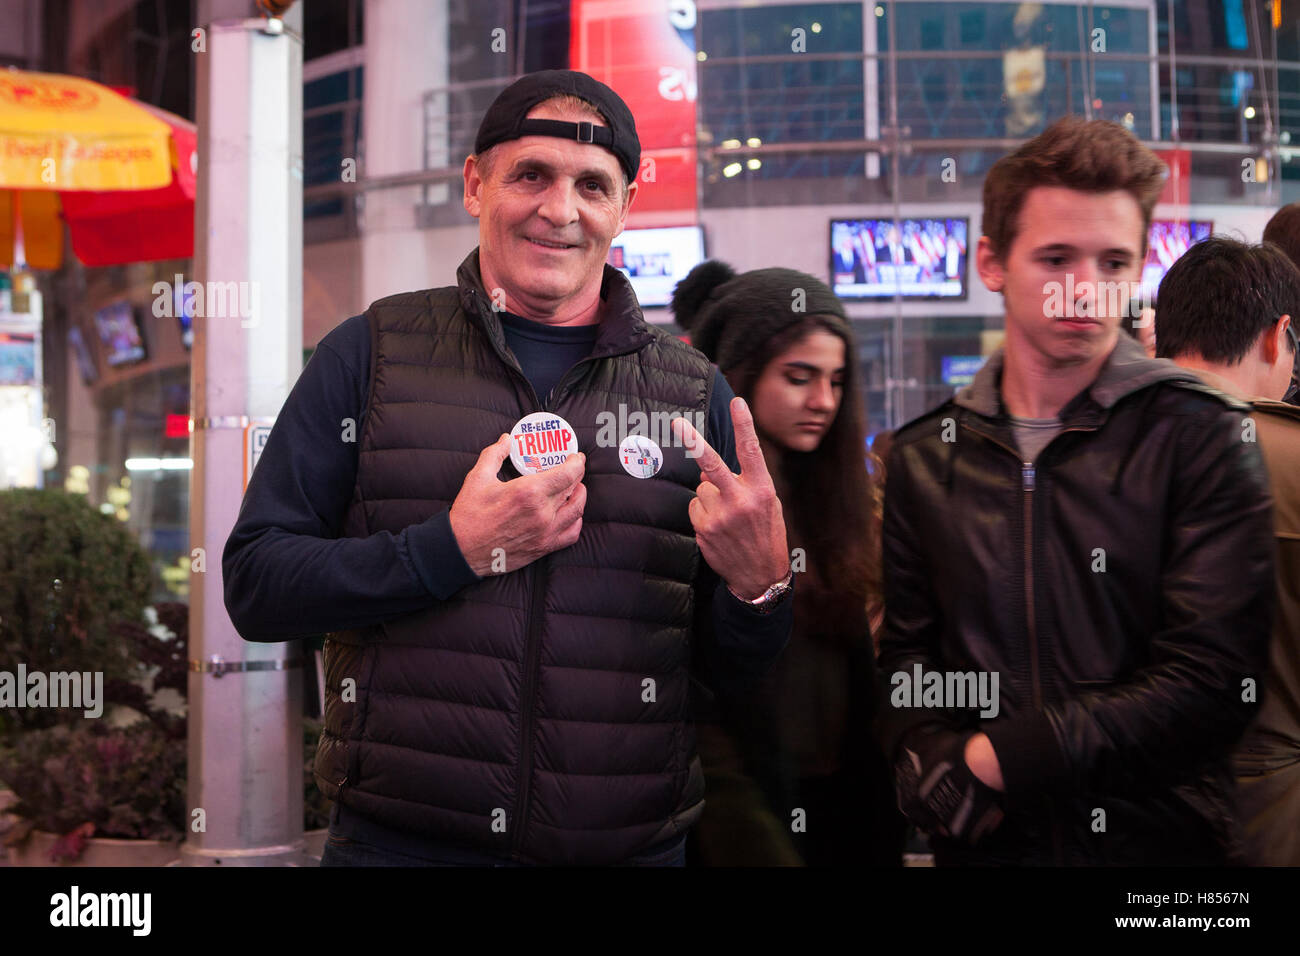 New York, NY, USA 9. November 2016. 02:50: ein Trumpf Anhänger (links) Gesten Sieg mit seinen Fingern beim Betrachten der Fotograf am Times Square. Foto: Alessandro Vecchi dpa Stockfoto